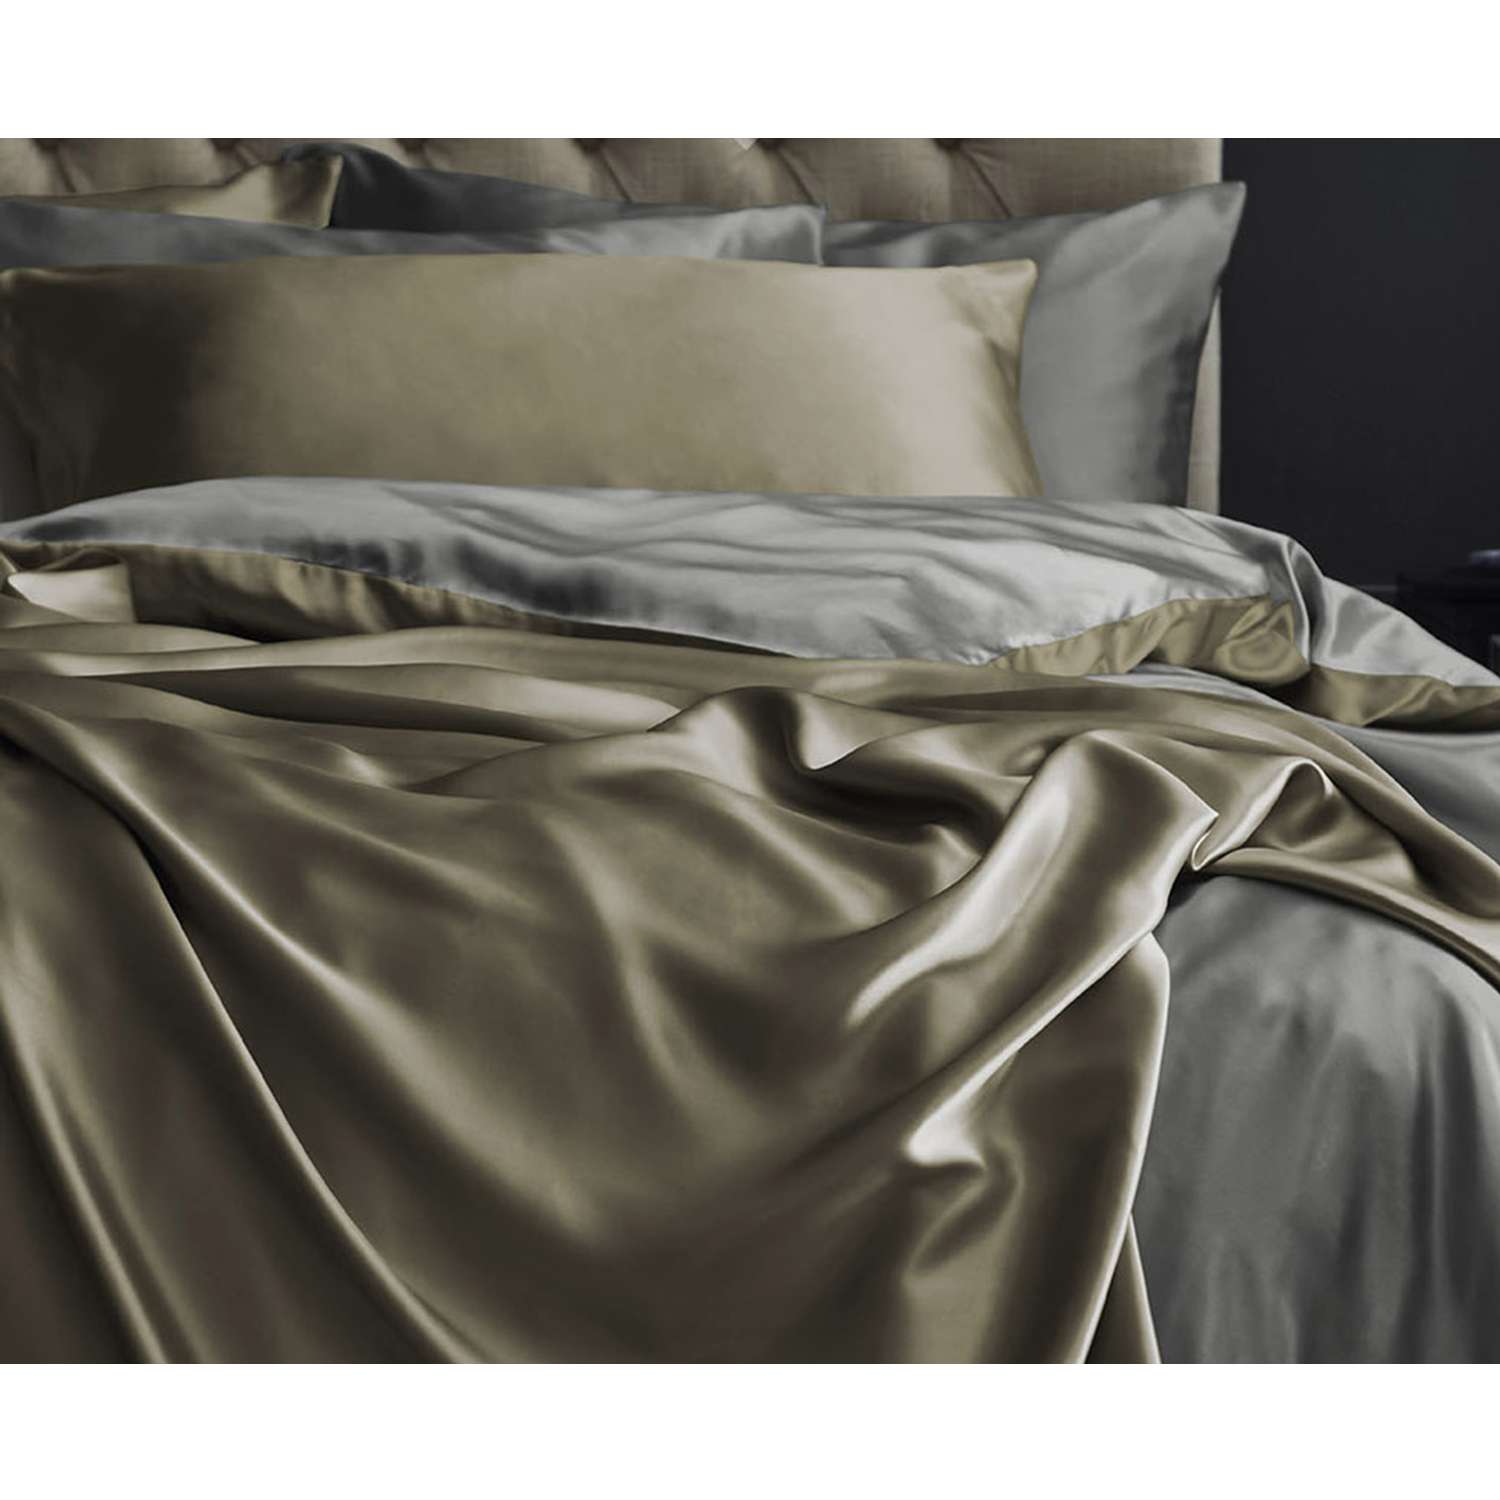 Комплект постельного белья Mona Liza 2 спальный ML Luxury sage тенсель лиоцелл шалфей/камень - фото 11